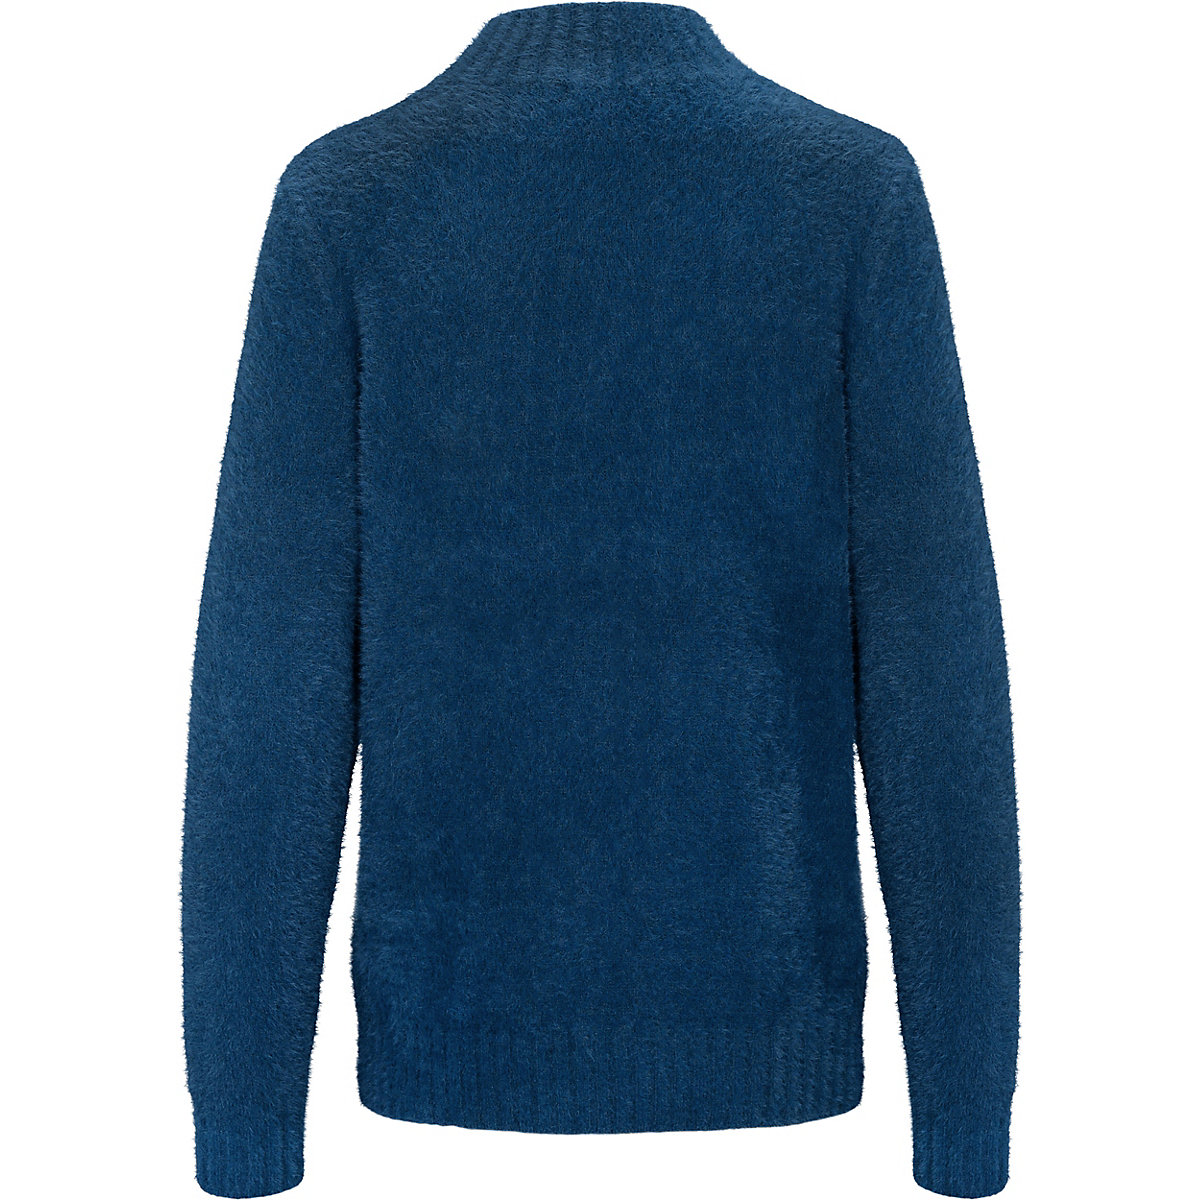 BASEFIELD Pullover Pullover blau/beige YN7323